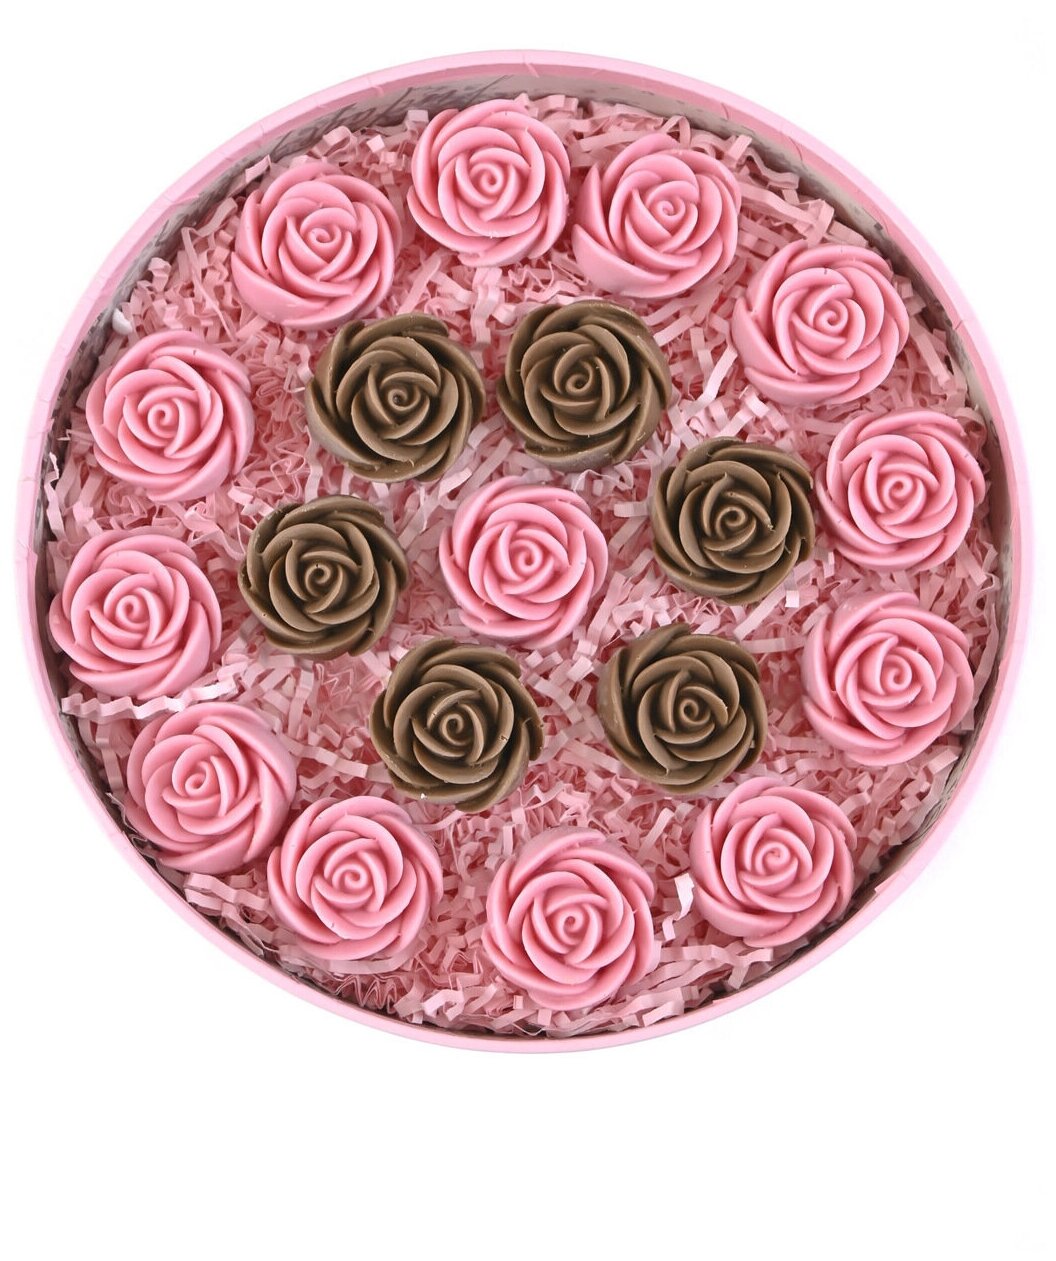 Шоколадные розы CHOCO STORY - 19 шт. в Розовой шляпной коробке, Розовый и Молочный Бельгийский шоколад с узором "Круг", 228 гр. Z19-R-RSH-O - фотография № 5